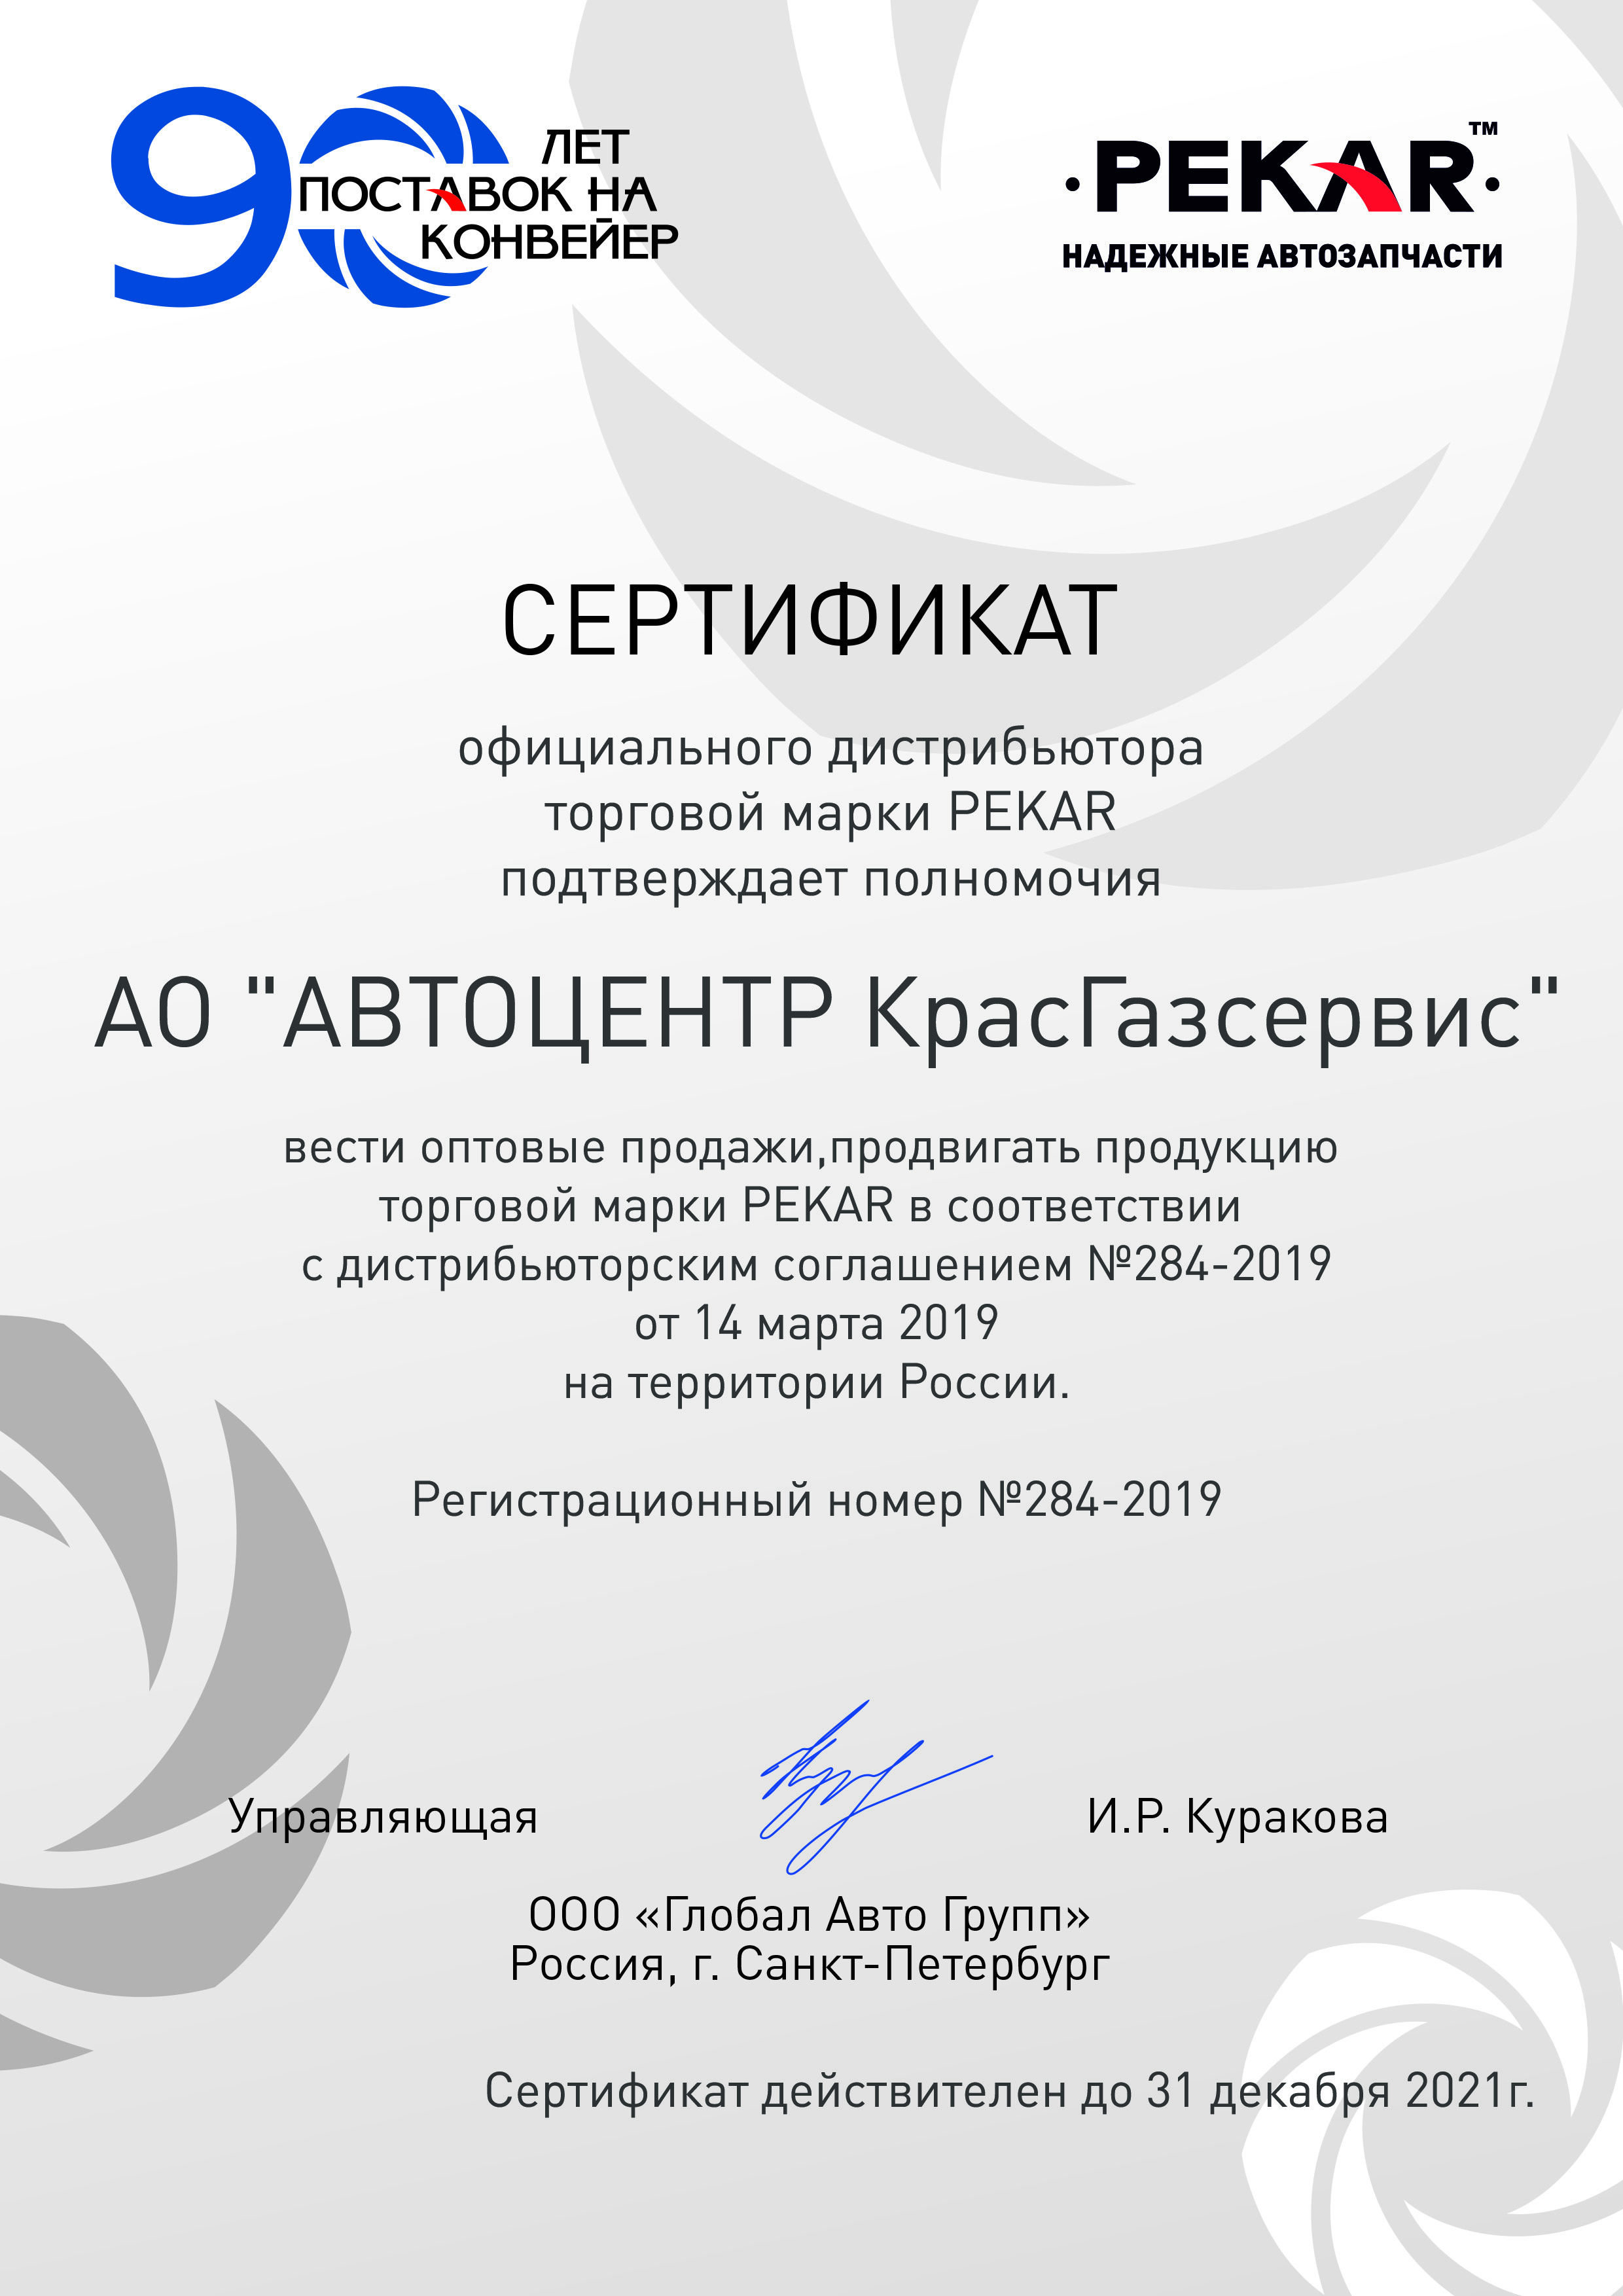 Сертификат АО "Автоцентр "КрасГАЗсервис" от торговой марки PEKAR